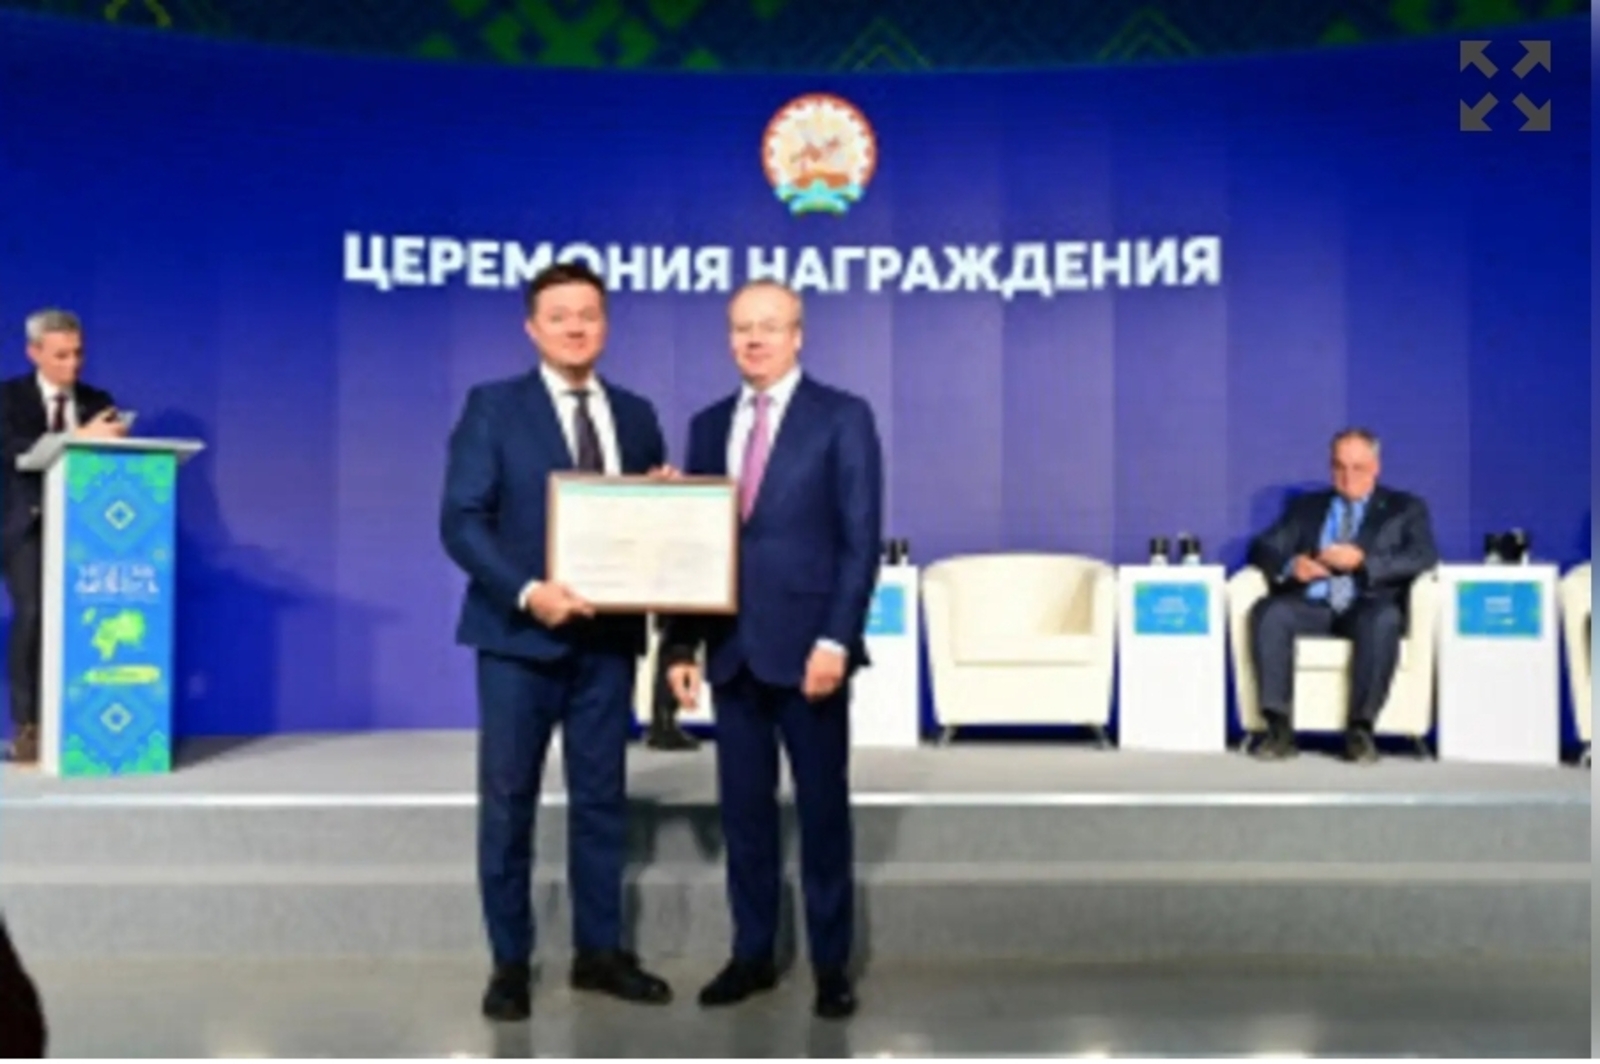 Андрей Назаров вручил награды за вклад в улучшение инвестклимата и экономики Башкирии